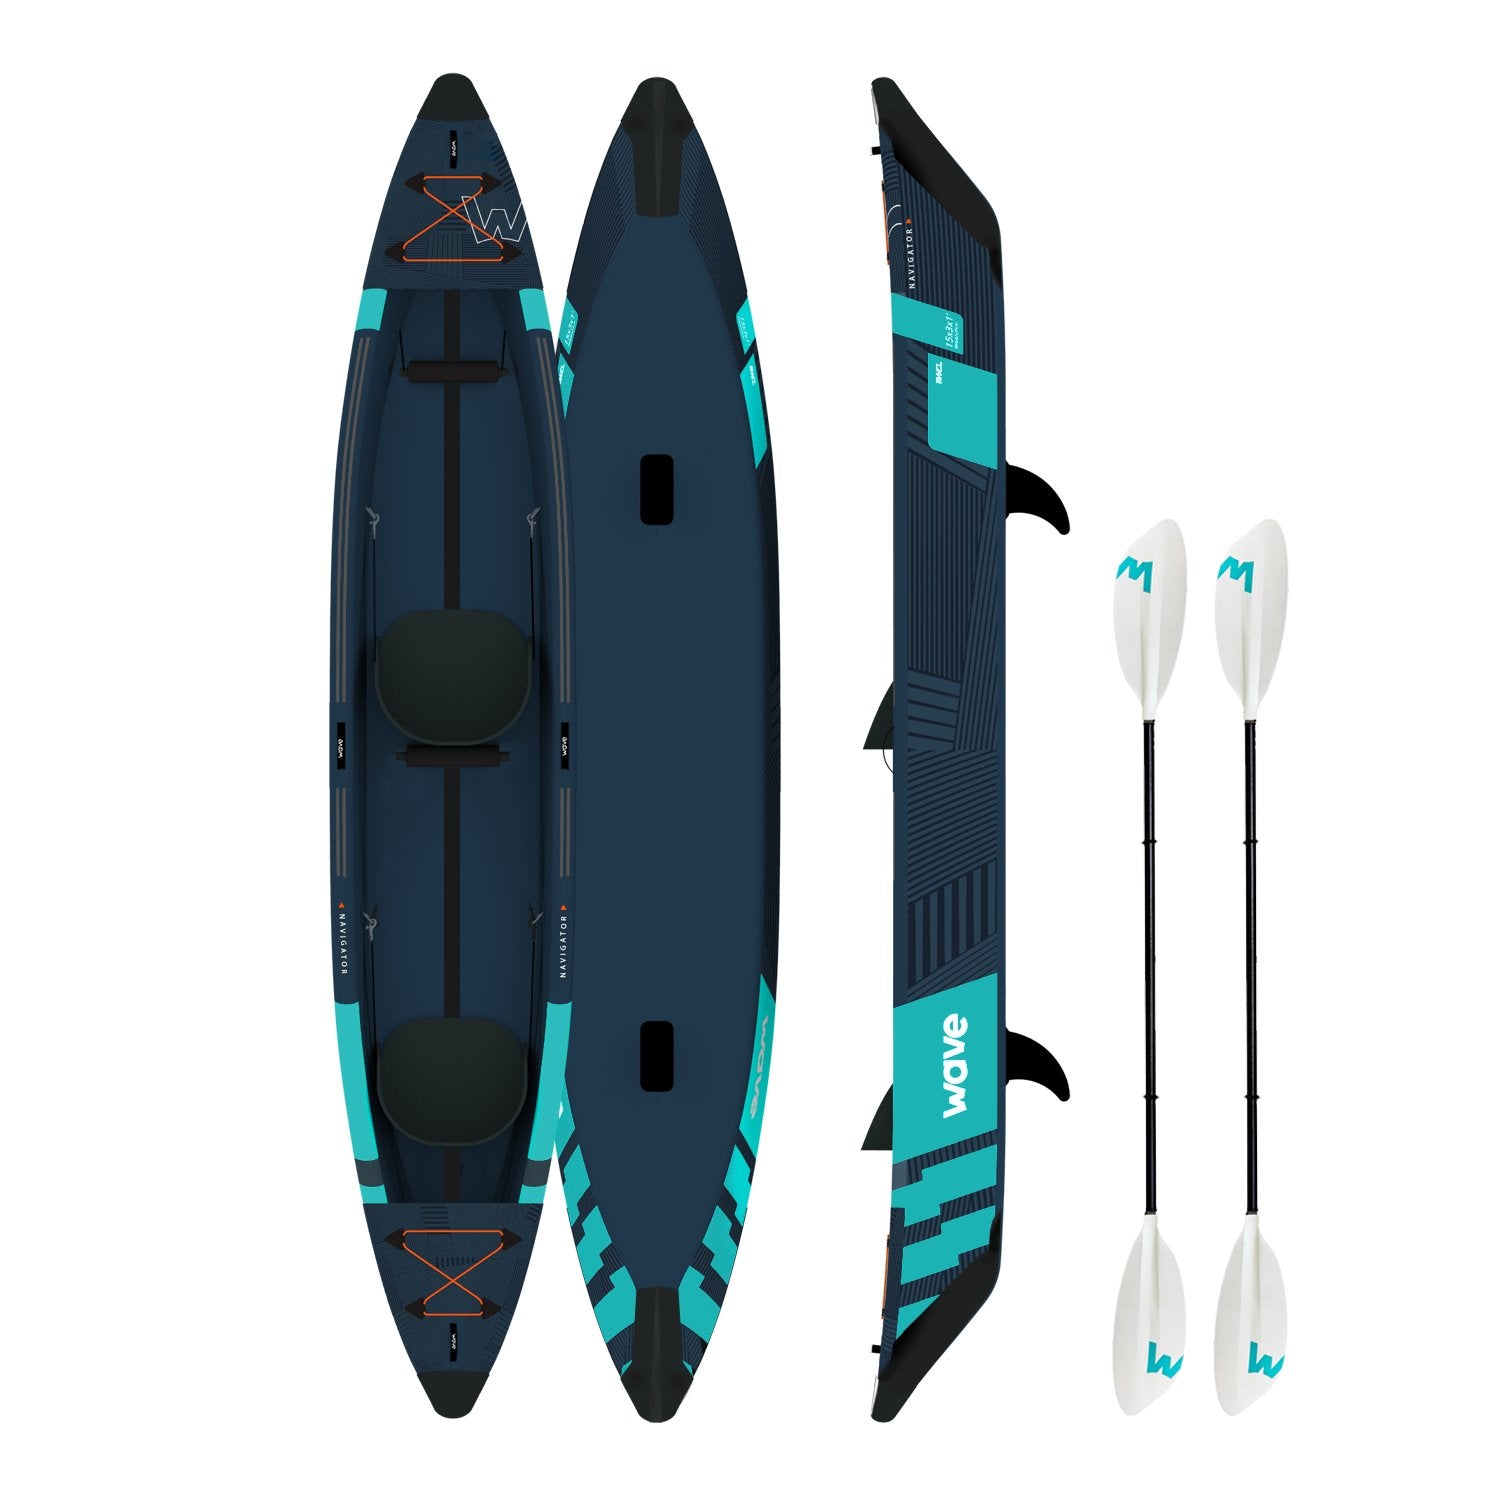 Navigator Plus | Inflatable Kayak | Drop-Stitch | 2-Seater - Wave Sups EU